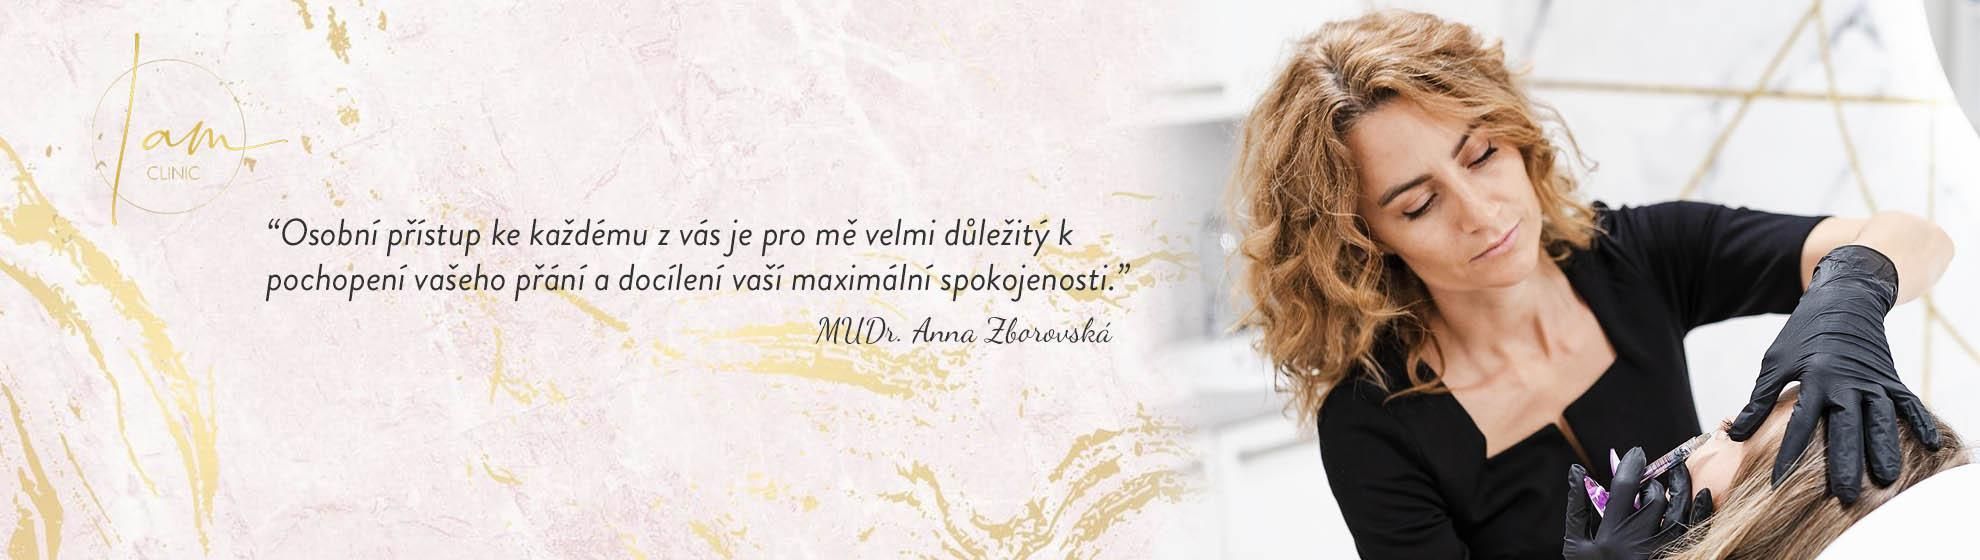 MUDr. Anna Zborovská